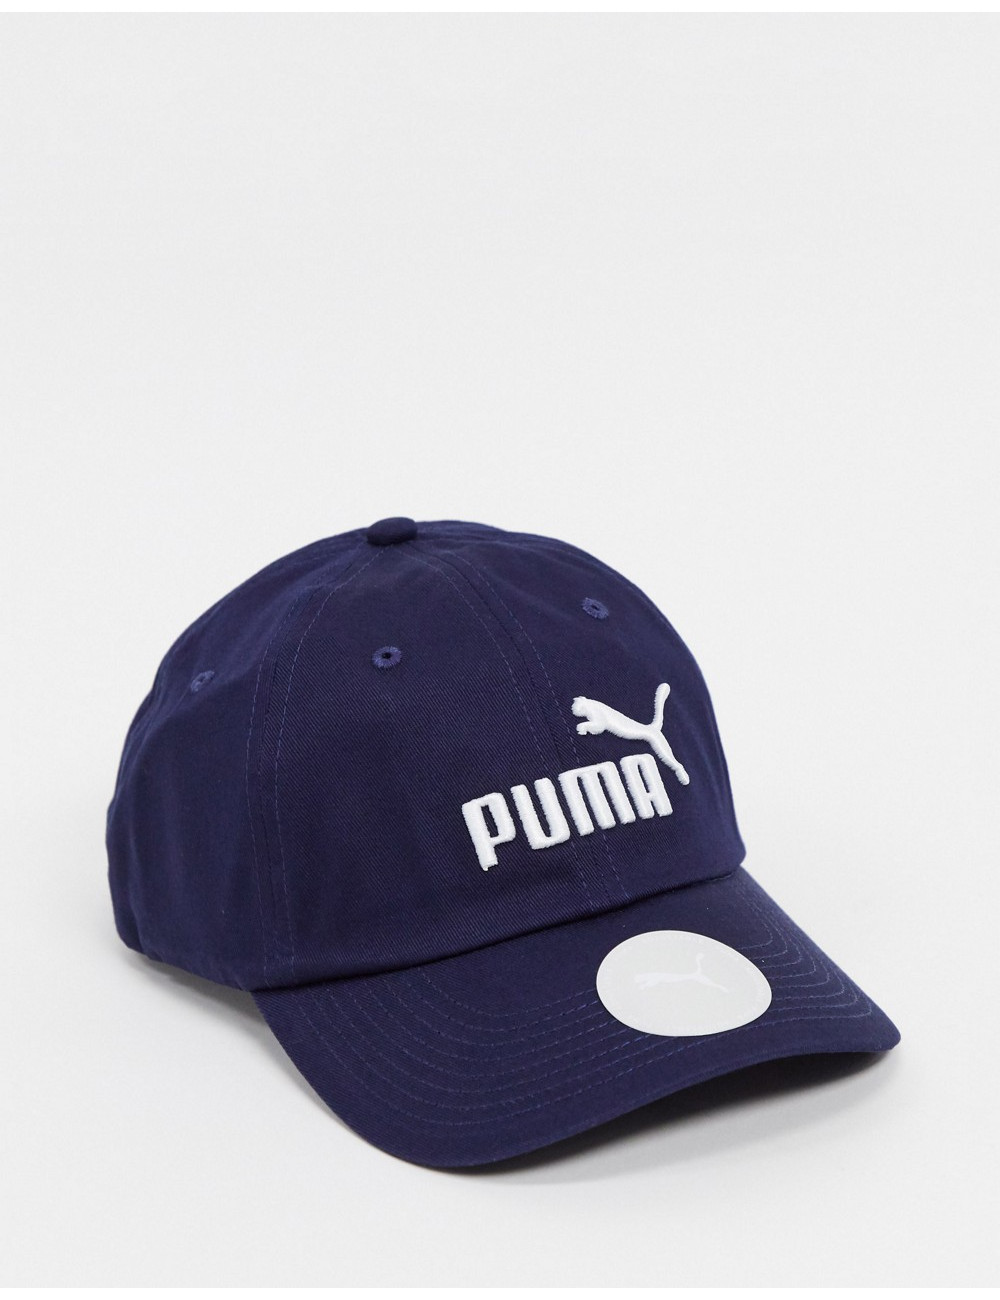 Puma Essentials cap in navy